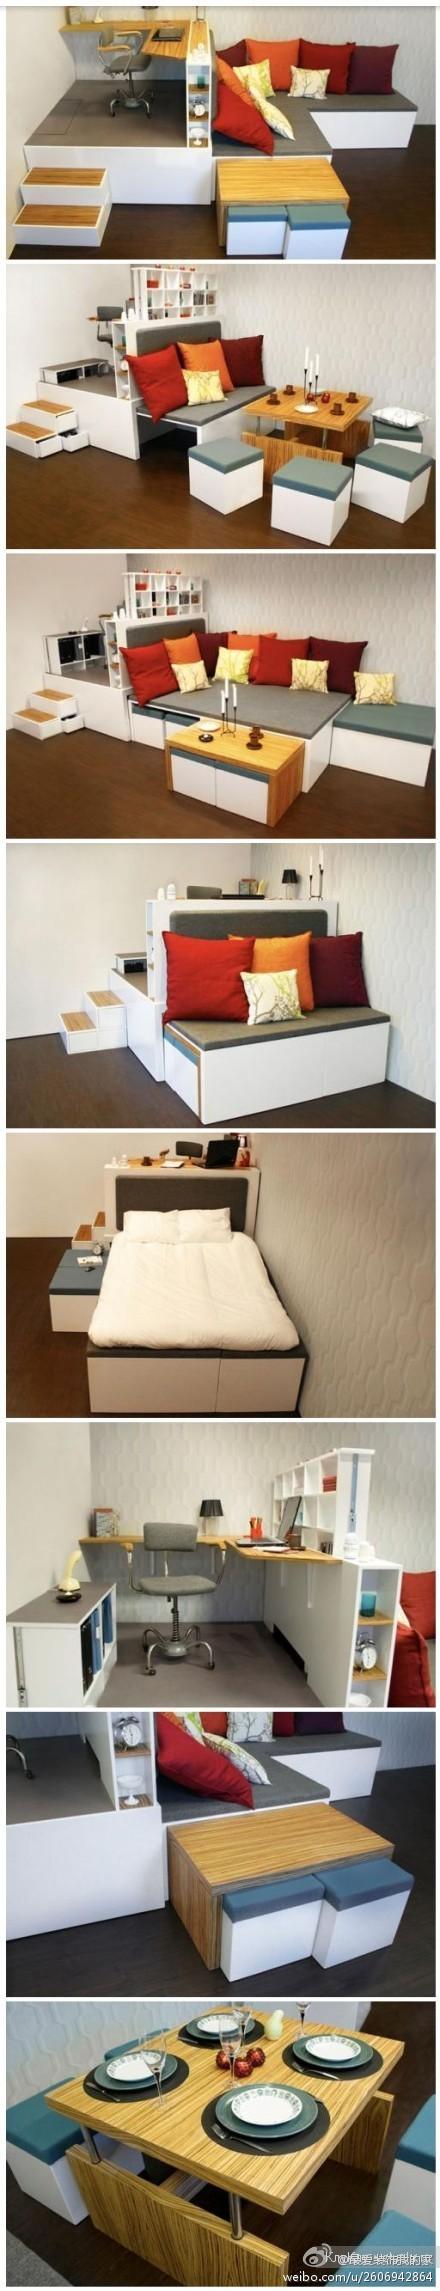 Компактная комнатка - интересное дизайнерское решение